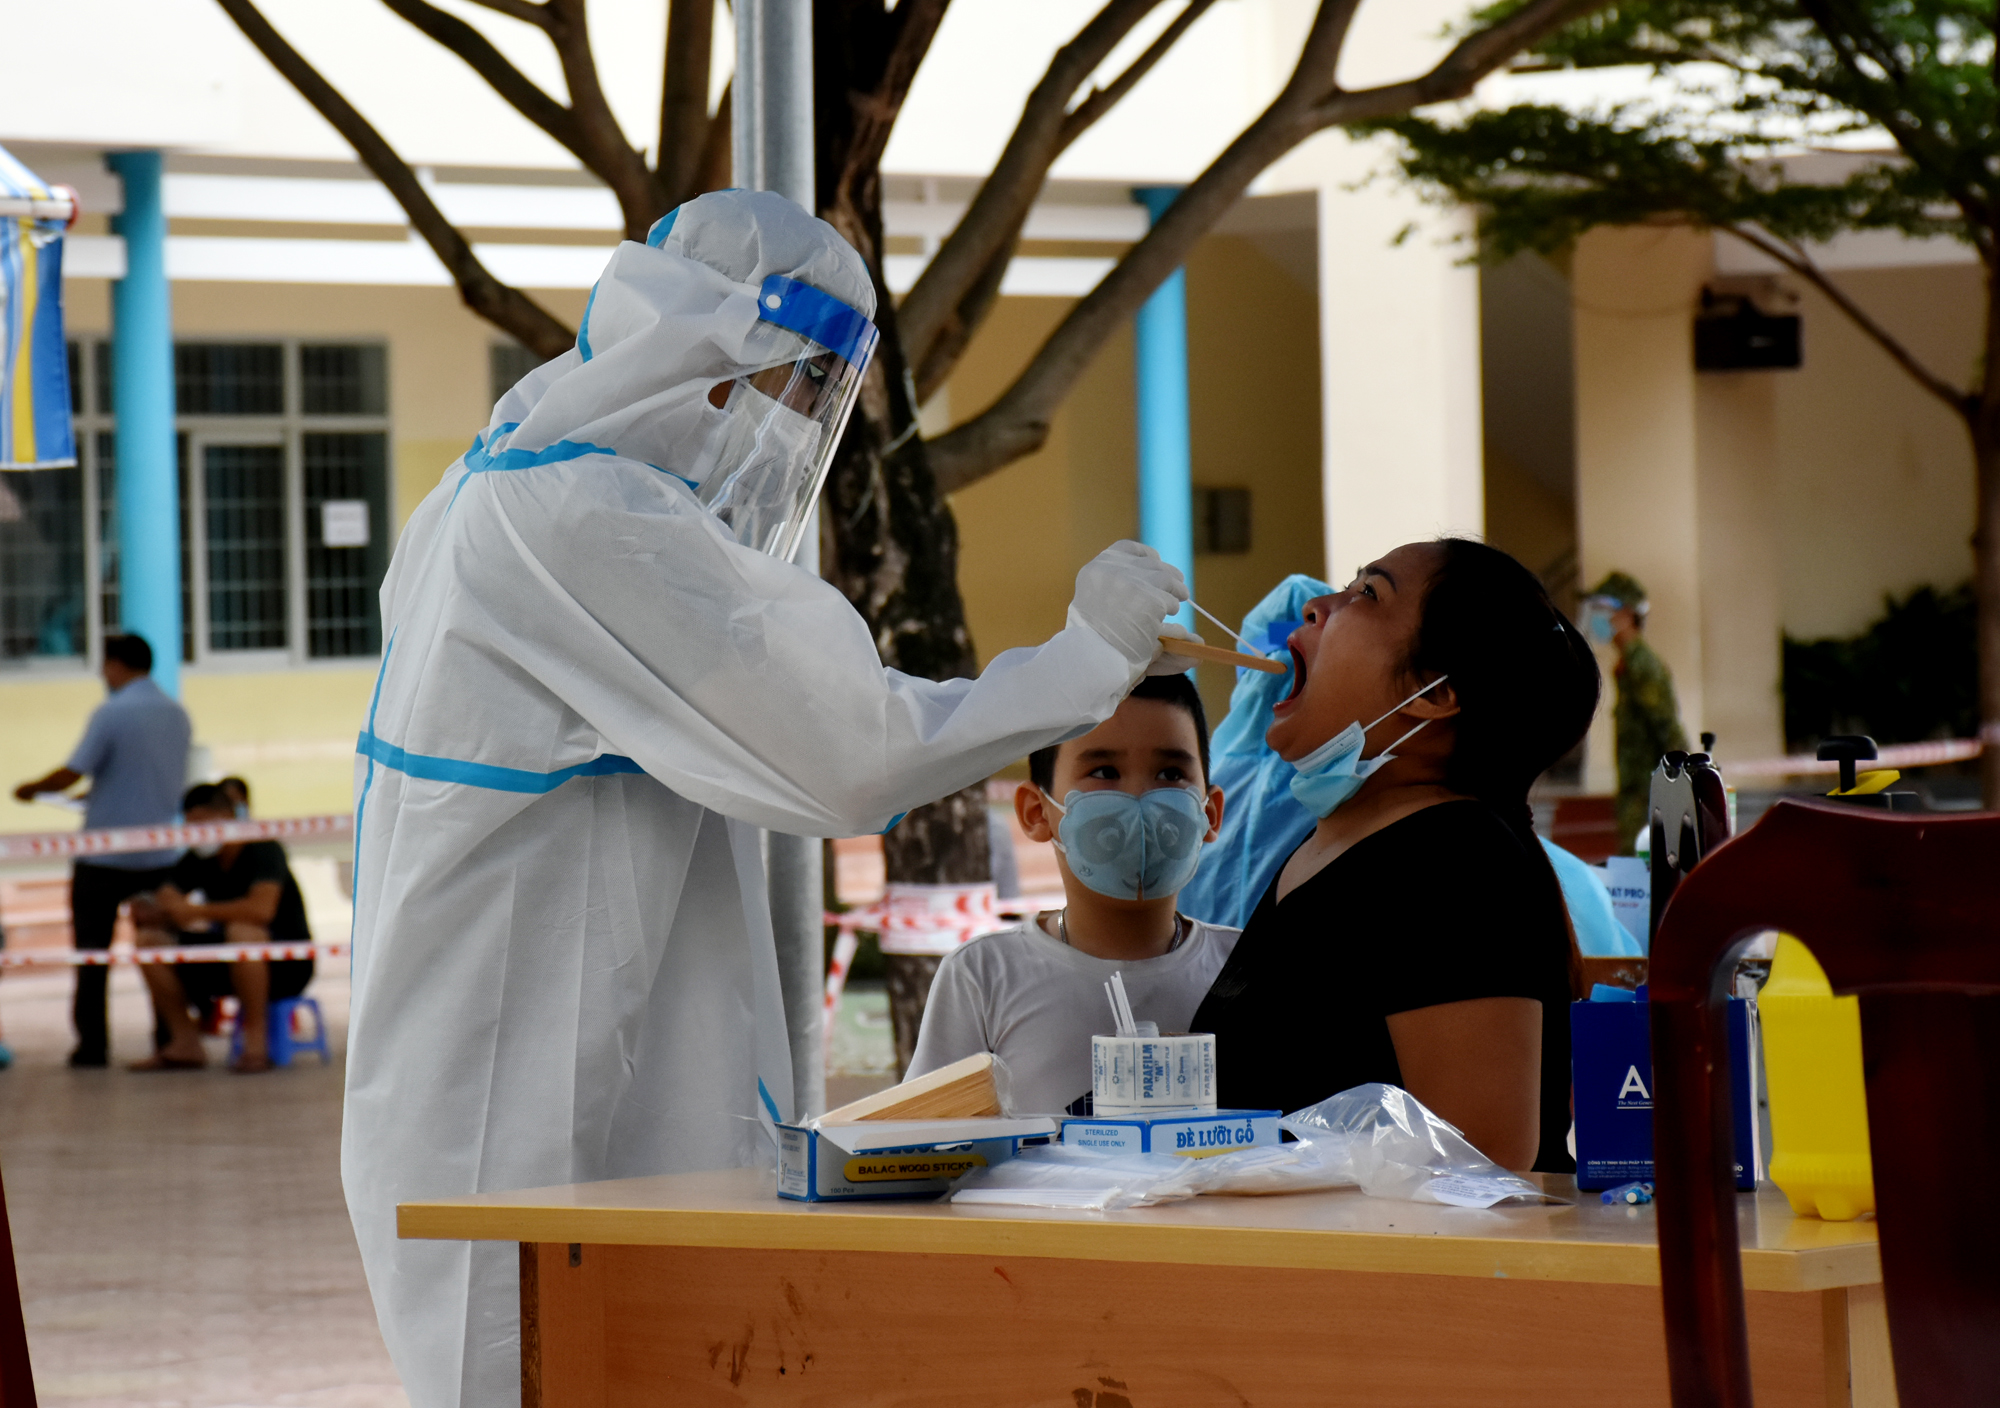 Tiểu thương chợ Rạch Dừa lấy mẫu test nhanh sau khi có ca tiểu thương tại chợ dương tính với COVID-19.